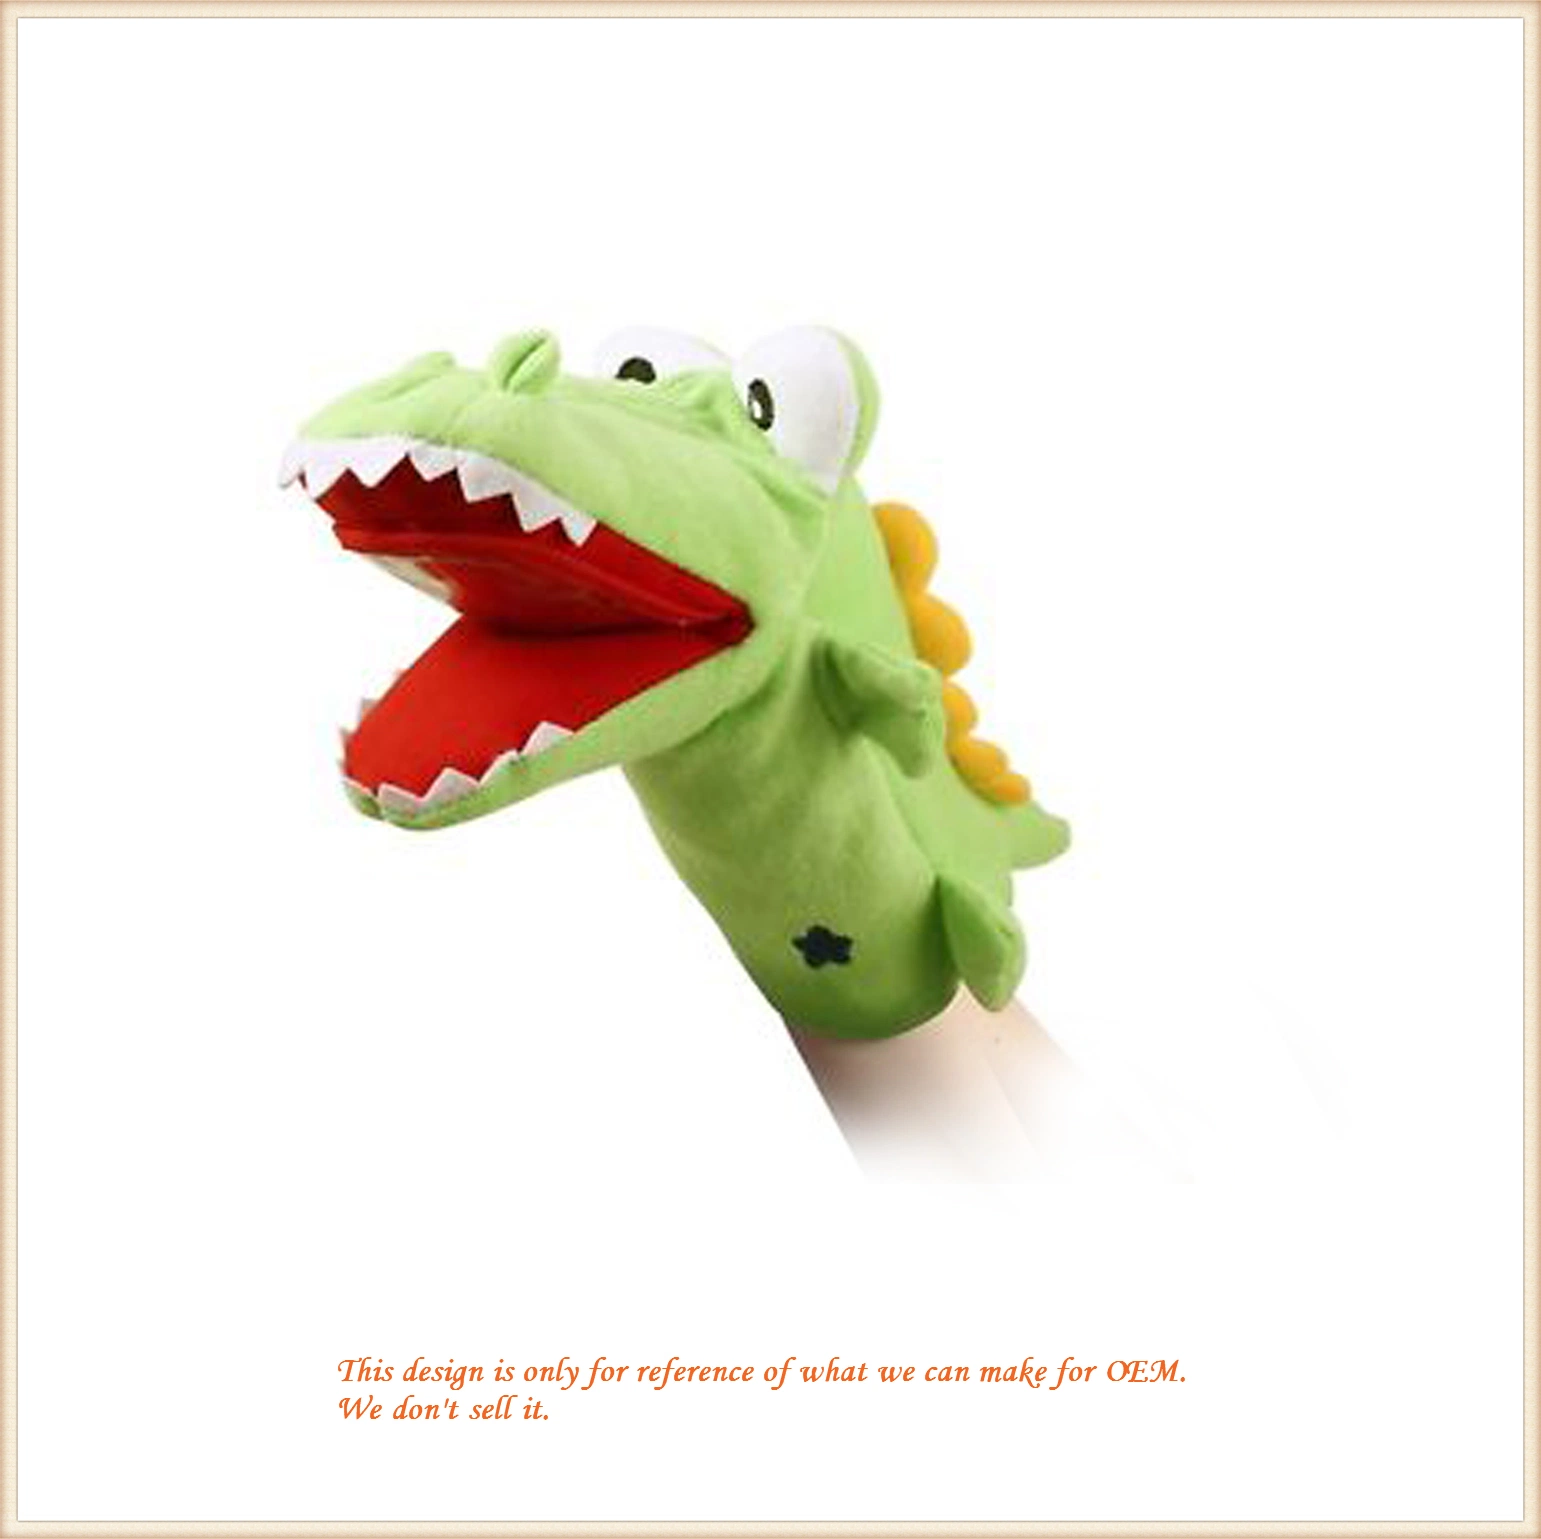 Peluche de peluche/personalizable/suave/relleno/Funny Crocodile mano Juguetes para marionetas para educación/Regalo/Promoción/niños/niños